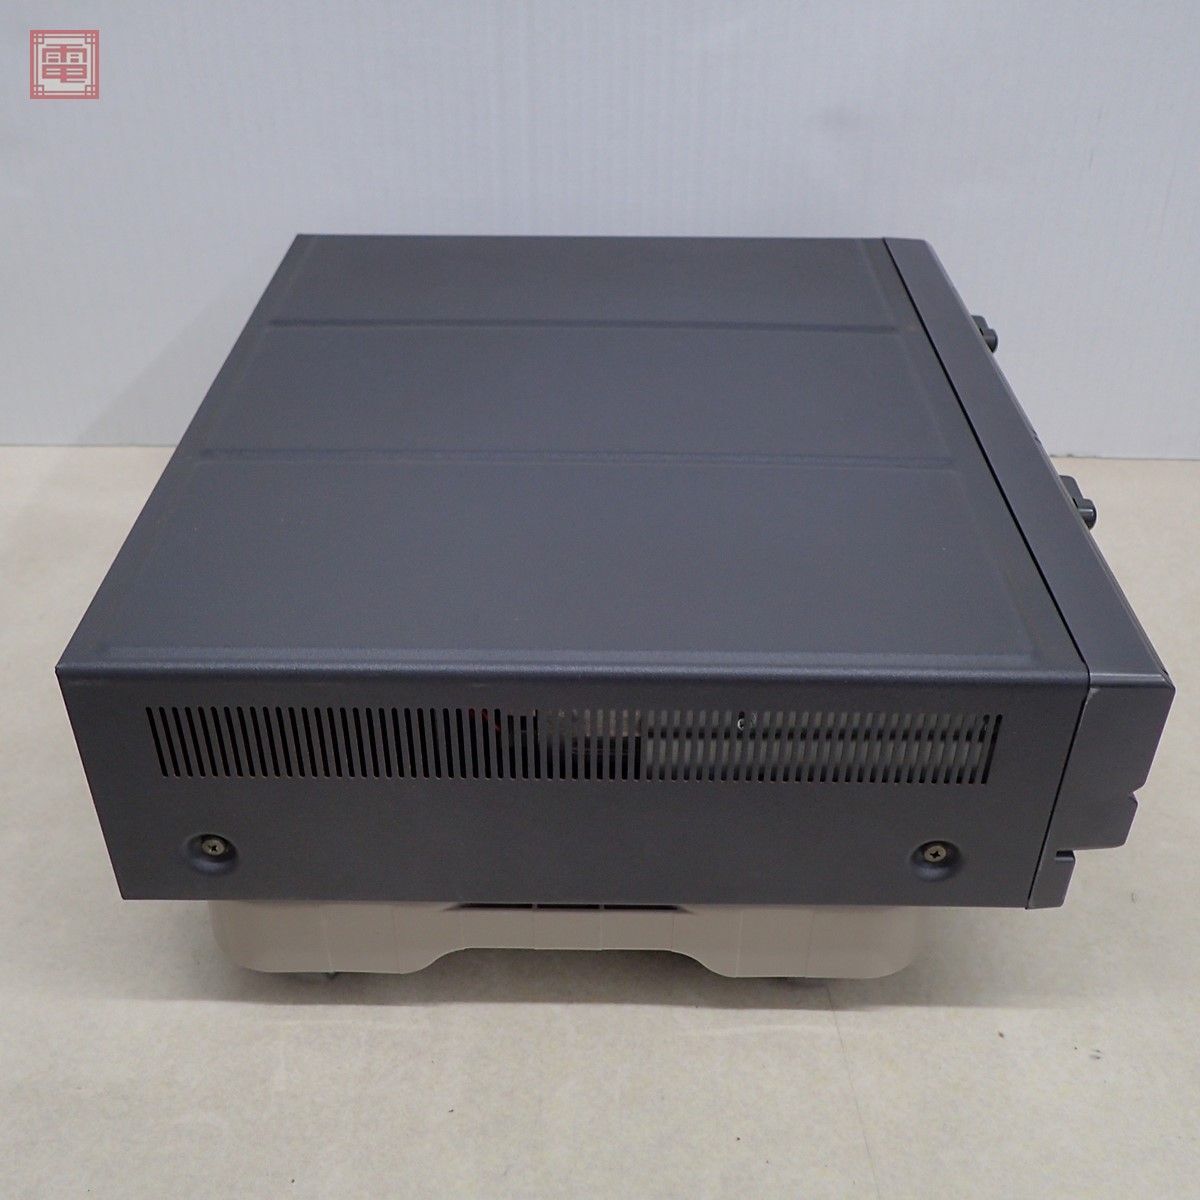 1 иен ~ капитальный ремонт settled NEC PC-8801FH корпус черный модель Япония электрический руководство пользователя *FD* в подарок soft [ доверие длина. .... способ . запись ] есть [40